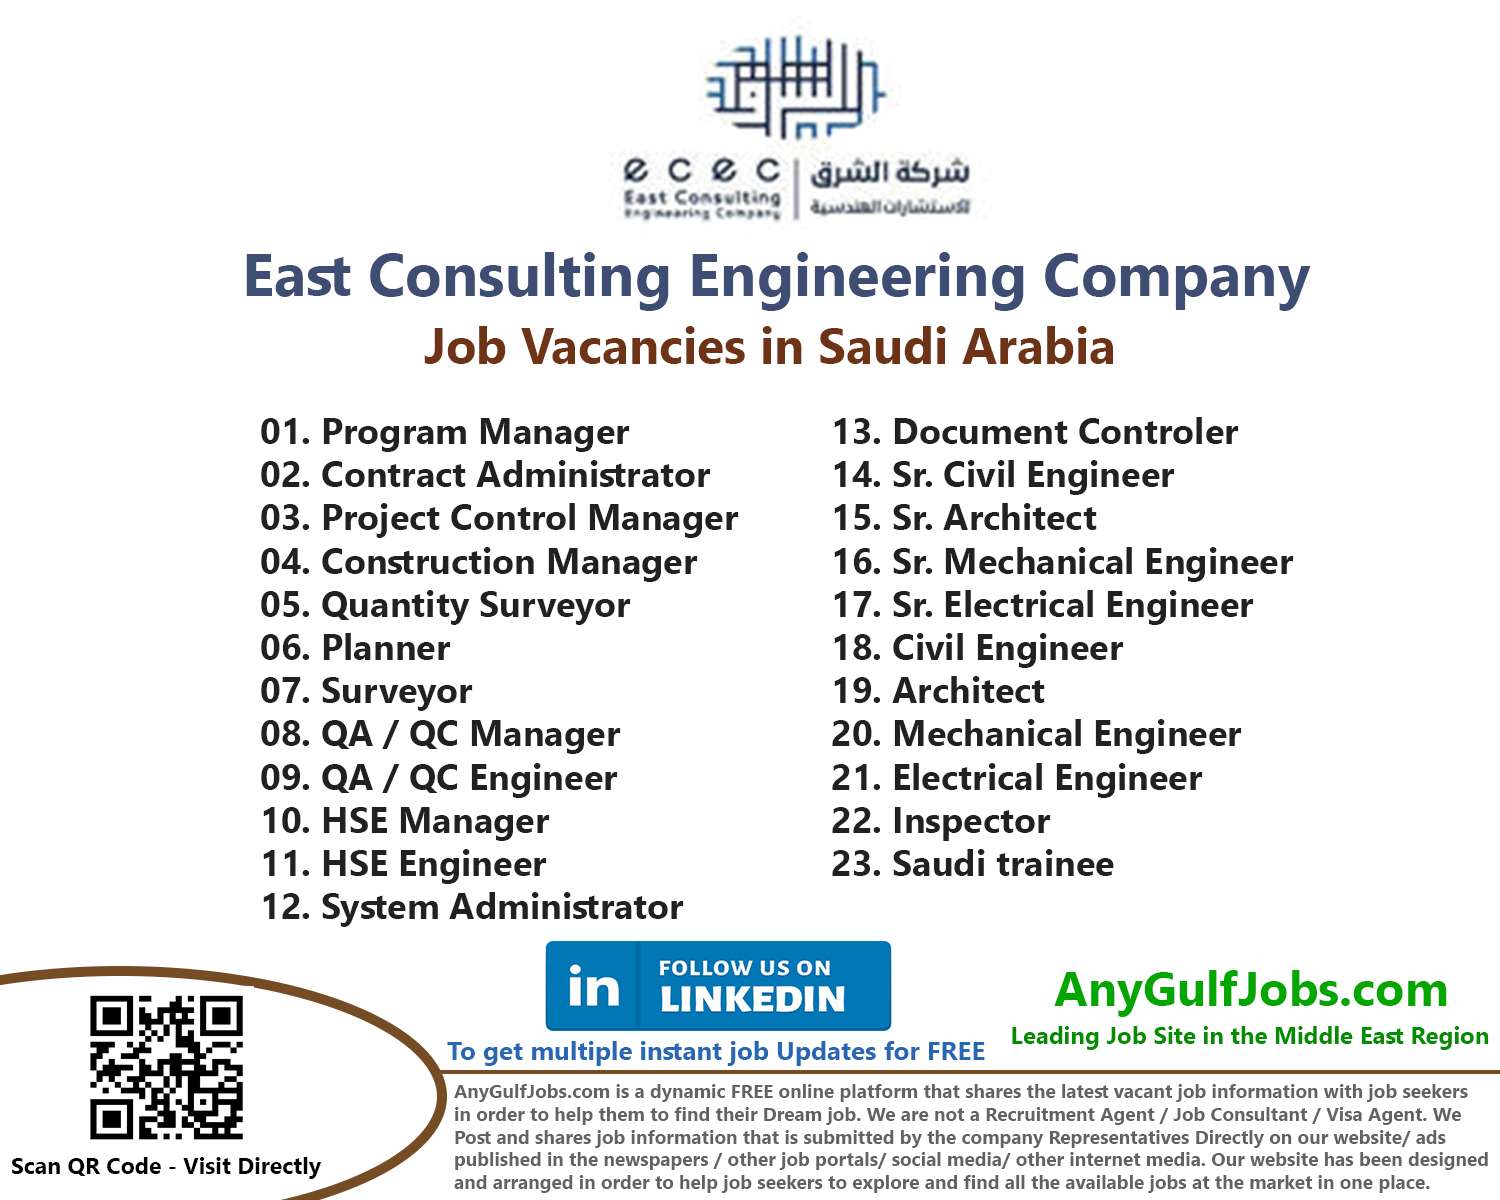 East Consulting Engineering Company Job Vacancies in Saudi Arabia